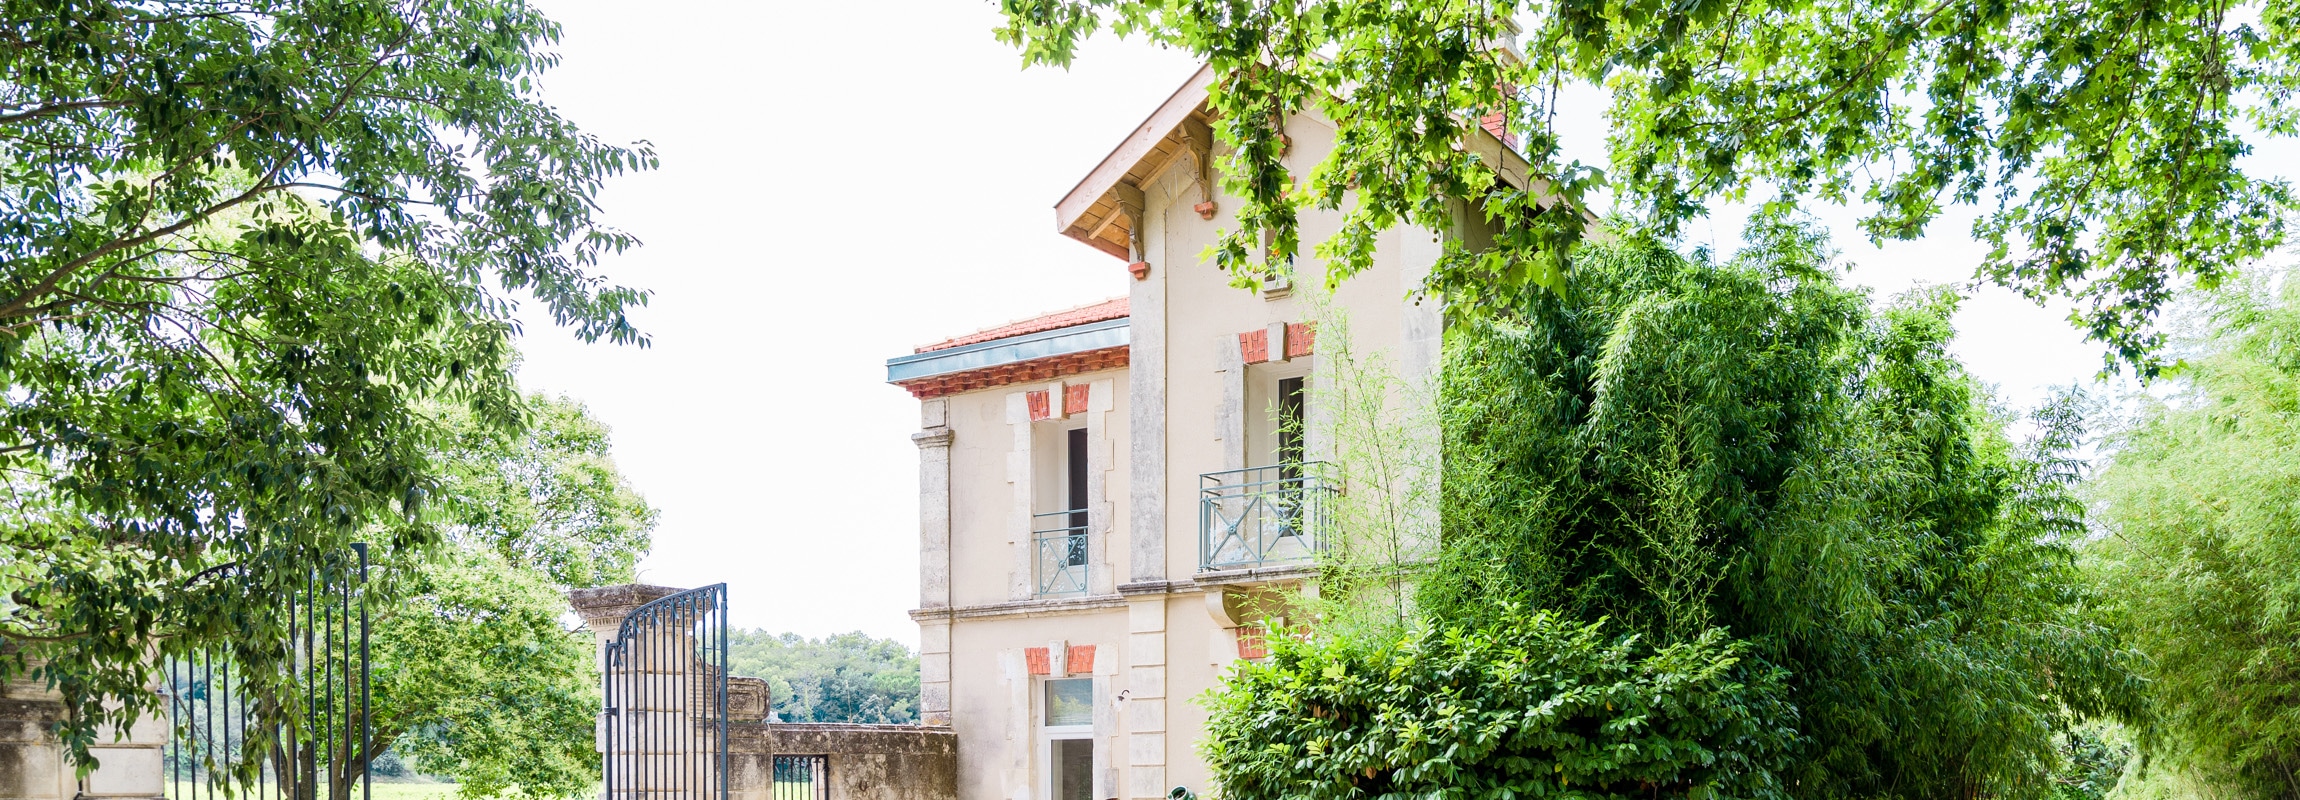 Das Ferienhaus La Maison im Château de Montcaud